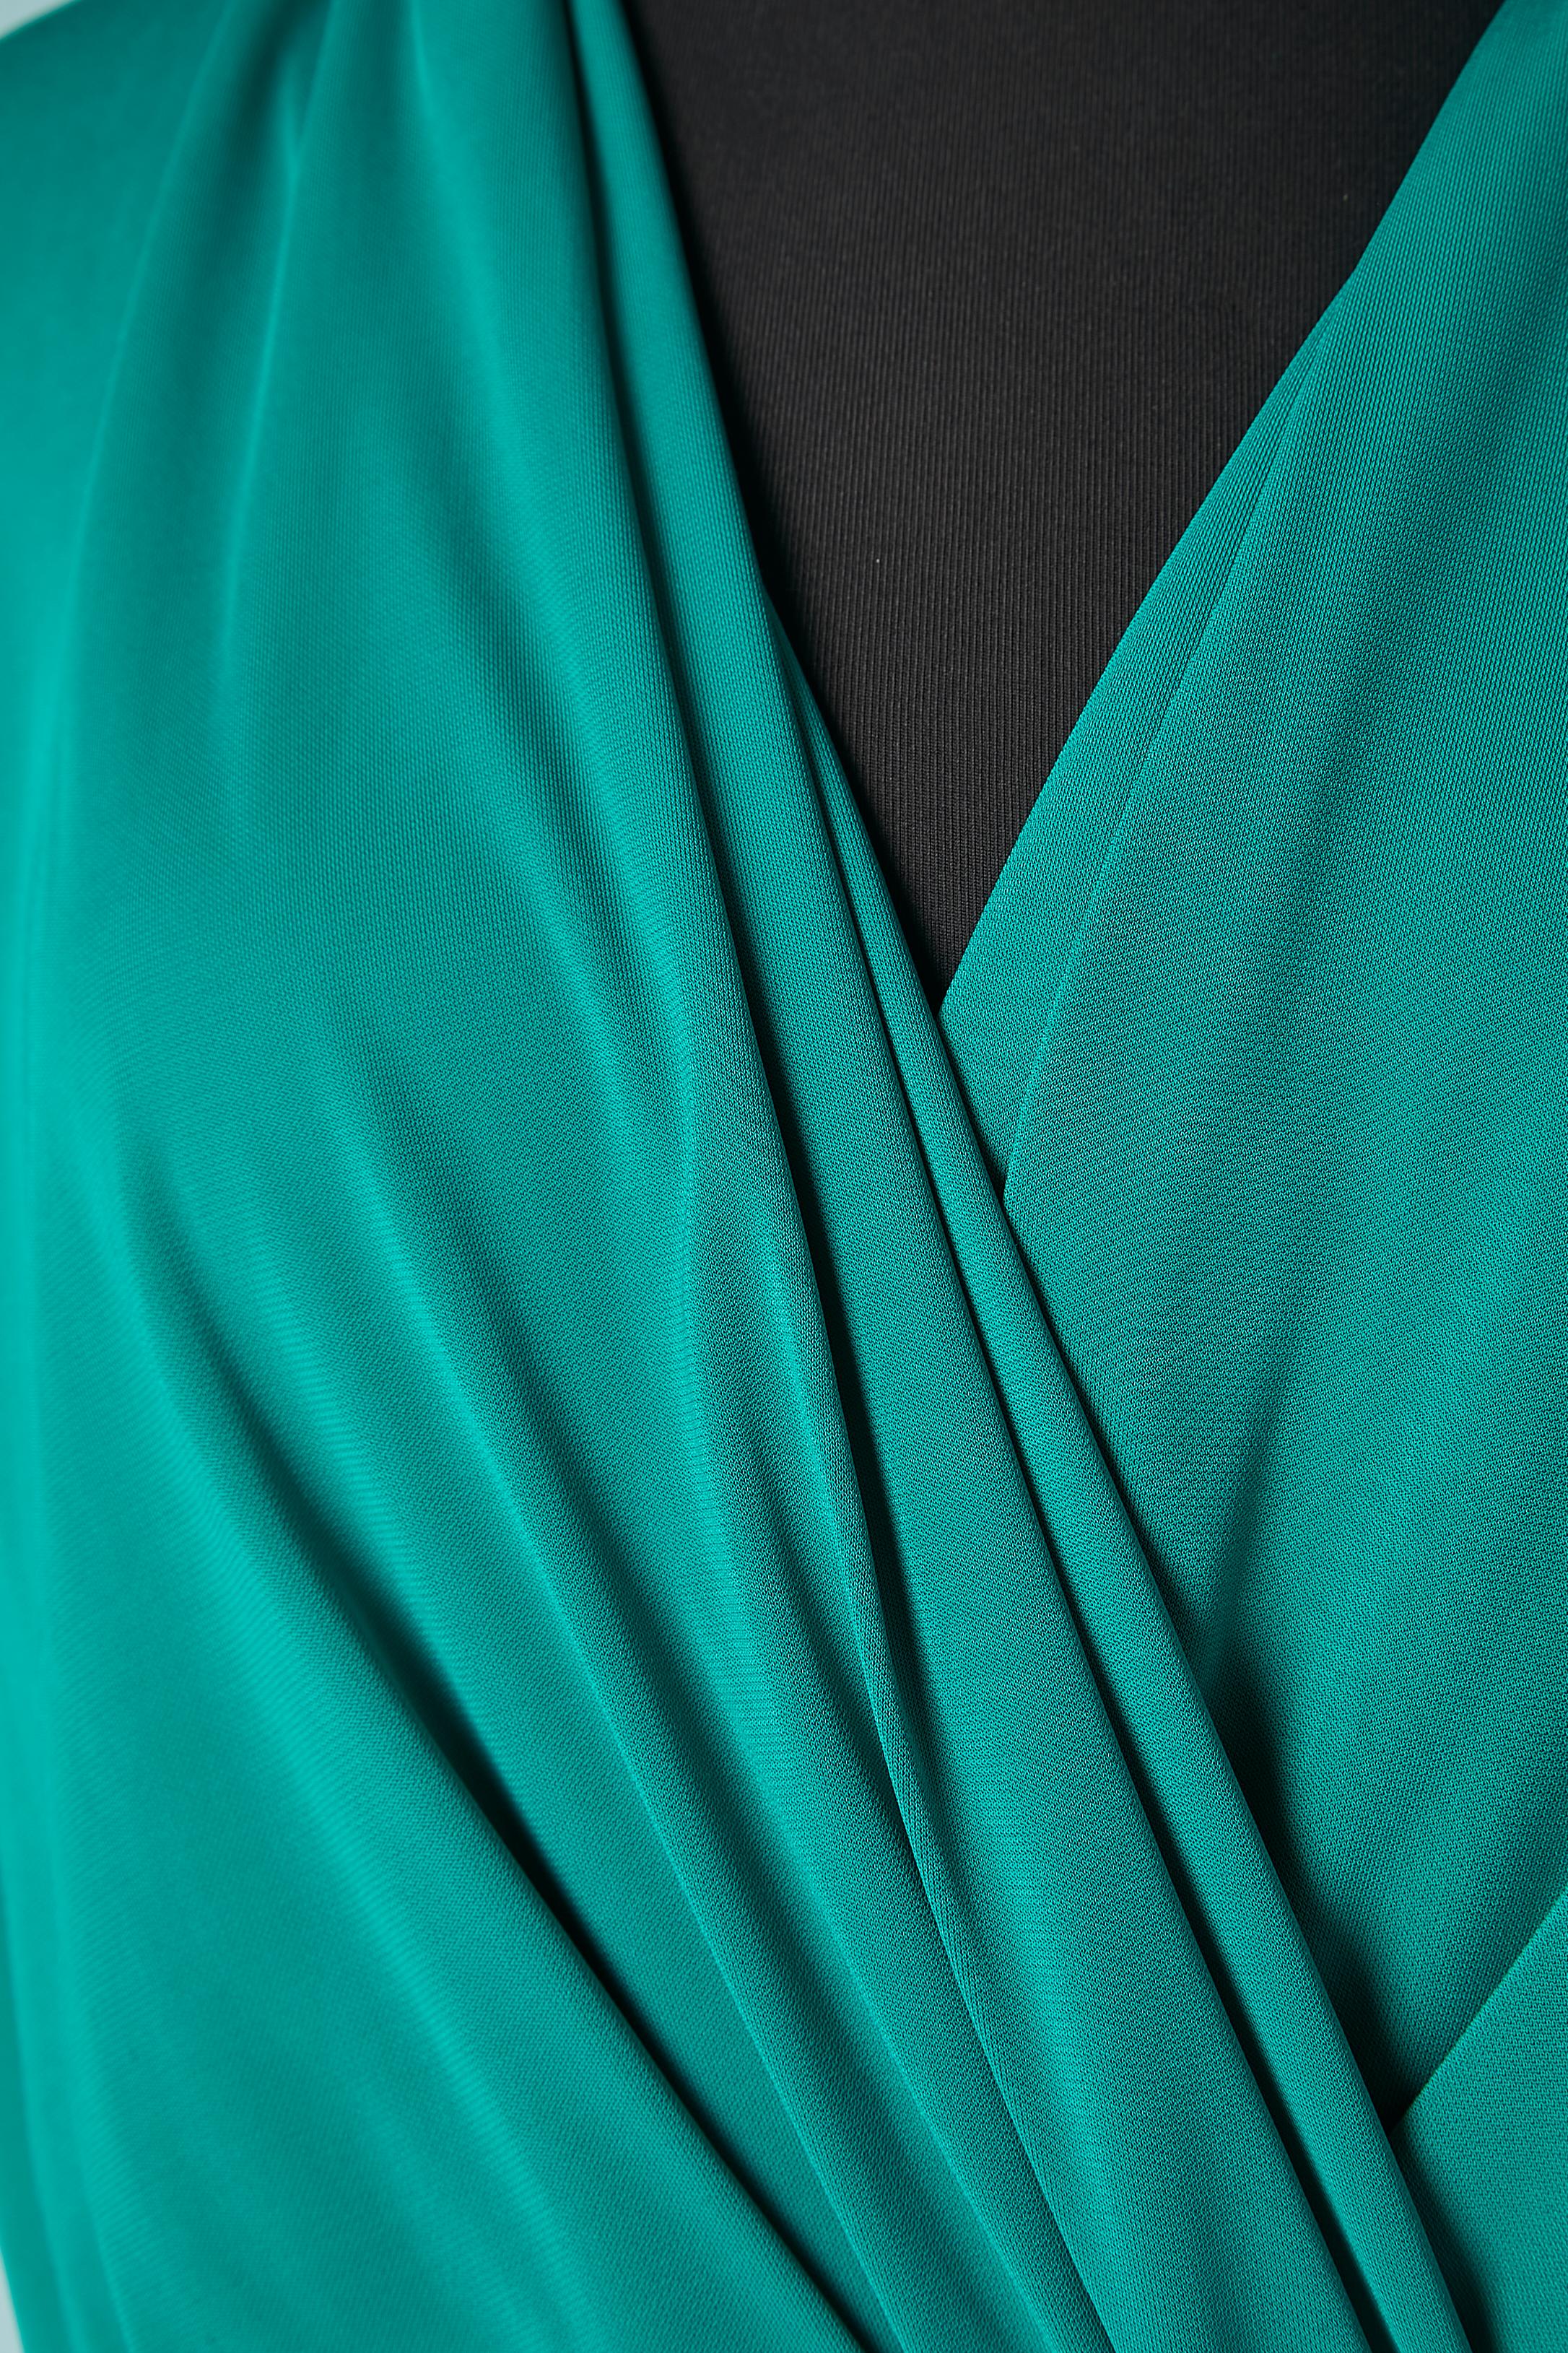 Smaragdgrünes, drapiertes Cocktailkleid aus Viskose.  Elastische Taille. Taschen auf beiden Seiten. 
GRÖSSE M 